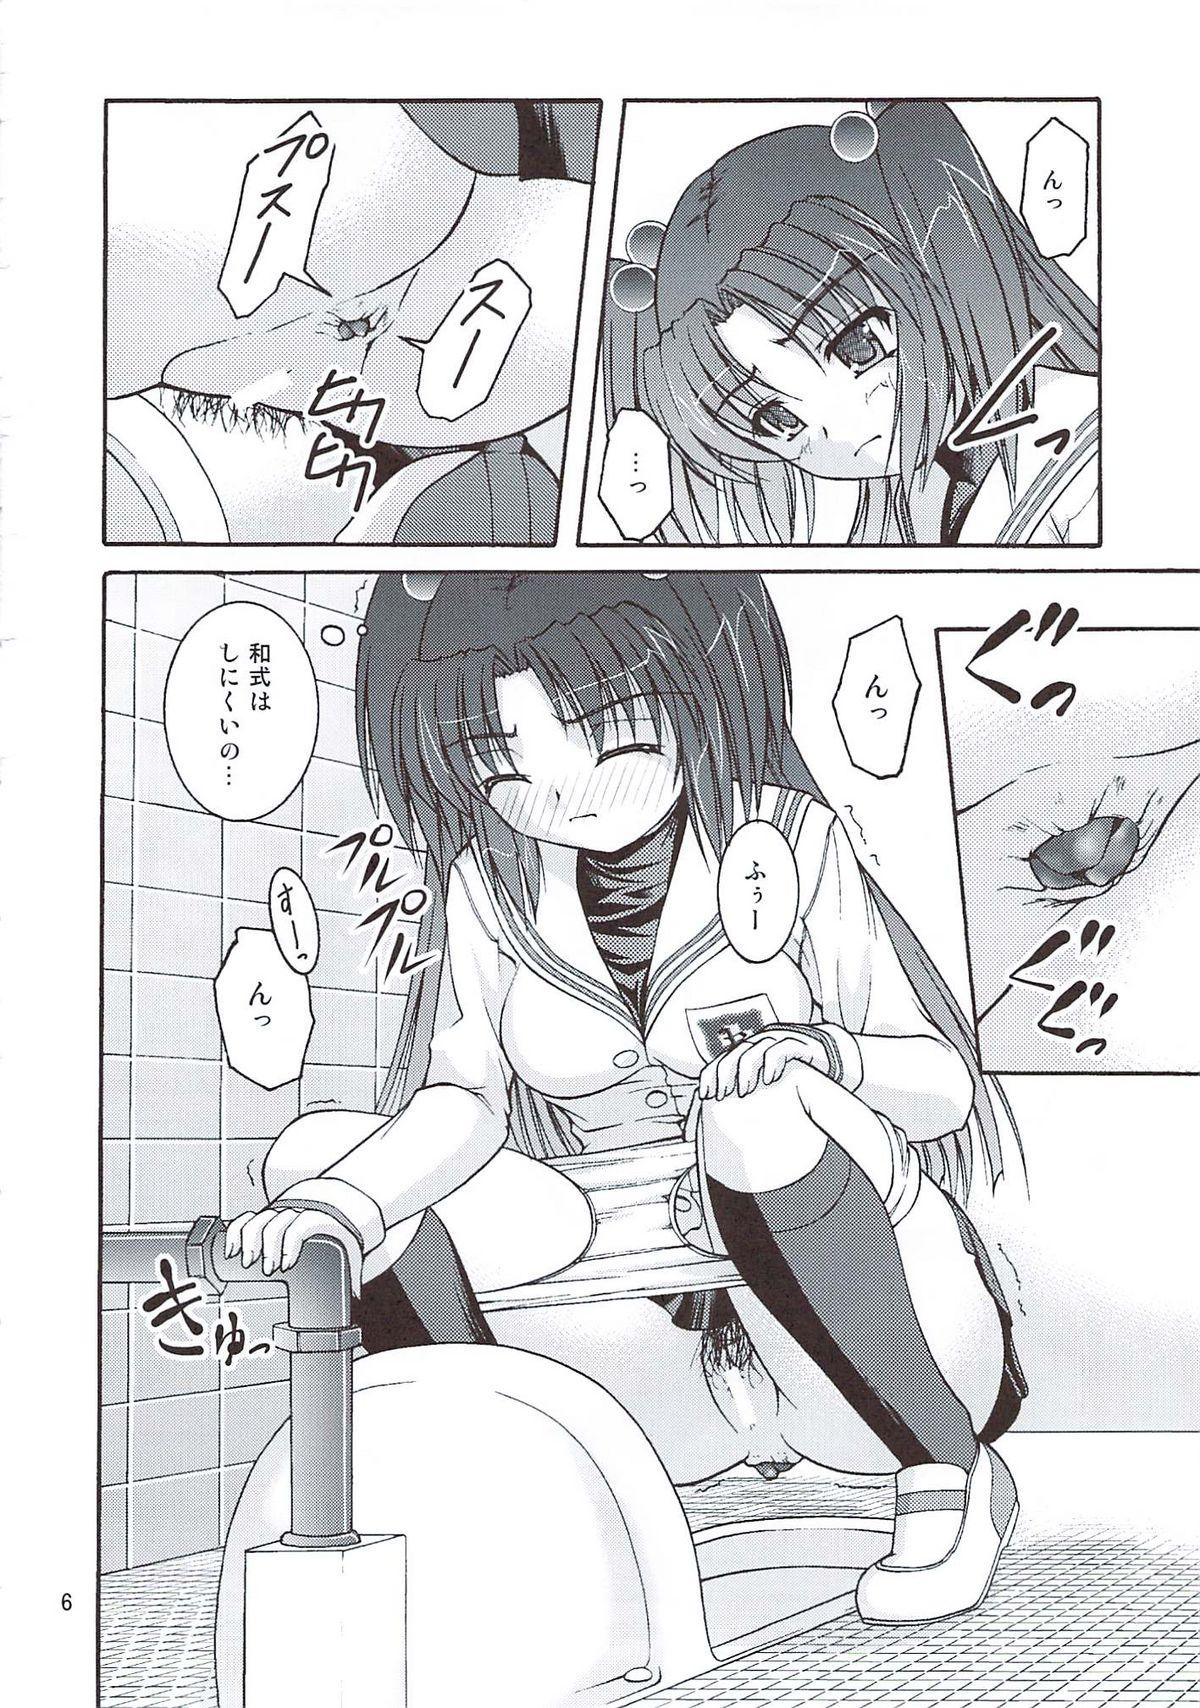 Perfect Butt Bou Yuumei Koukou Joshi Toilet Tousatsu 2-jigen Bishoujo Hen Vol. 4 - Clannad 19yo - Page 5